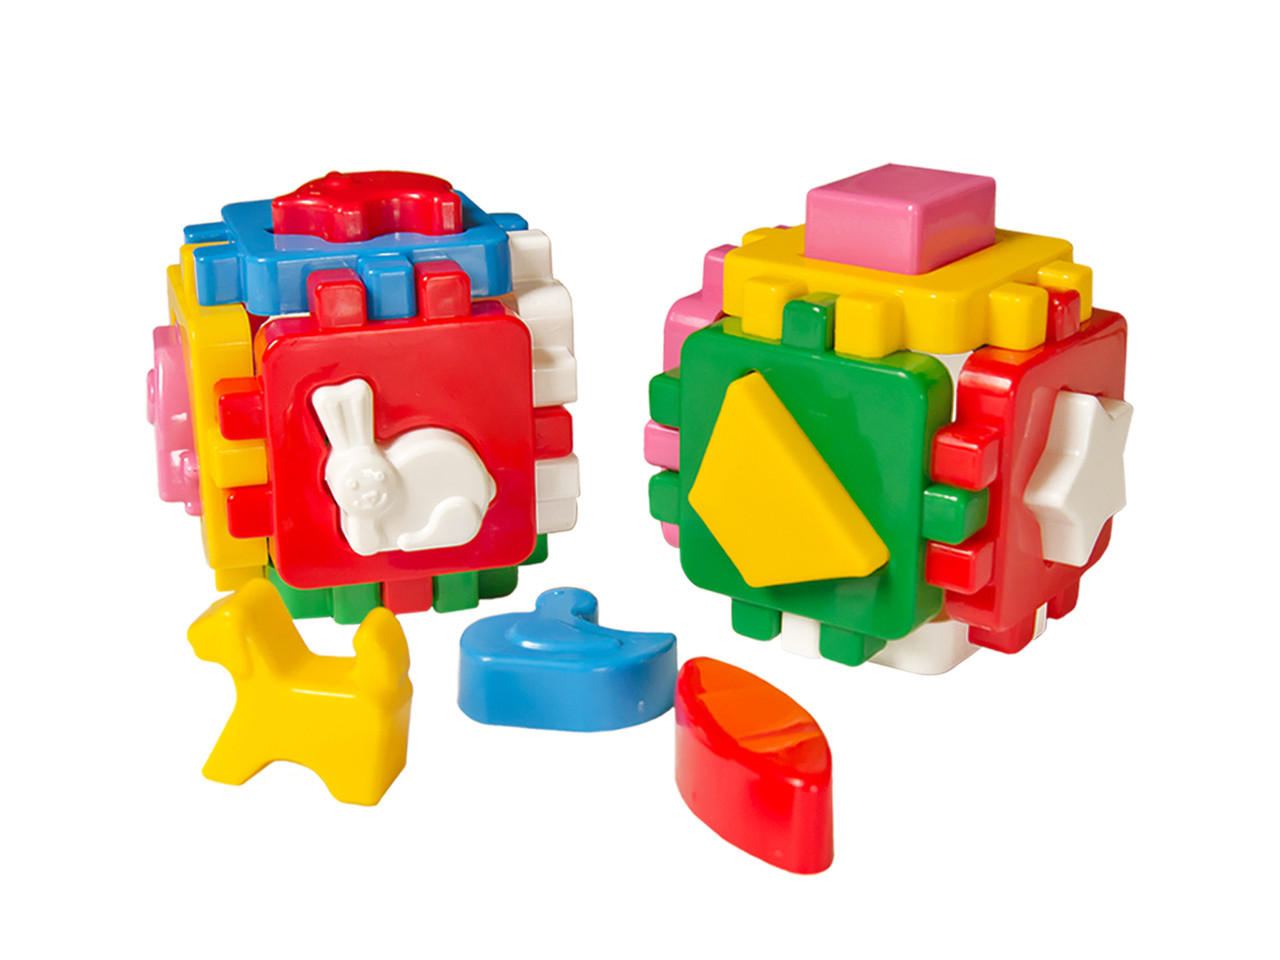 Іграшка куб Розумний малюк Весела компанія ТехноК (1950)